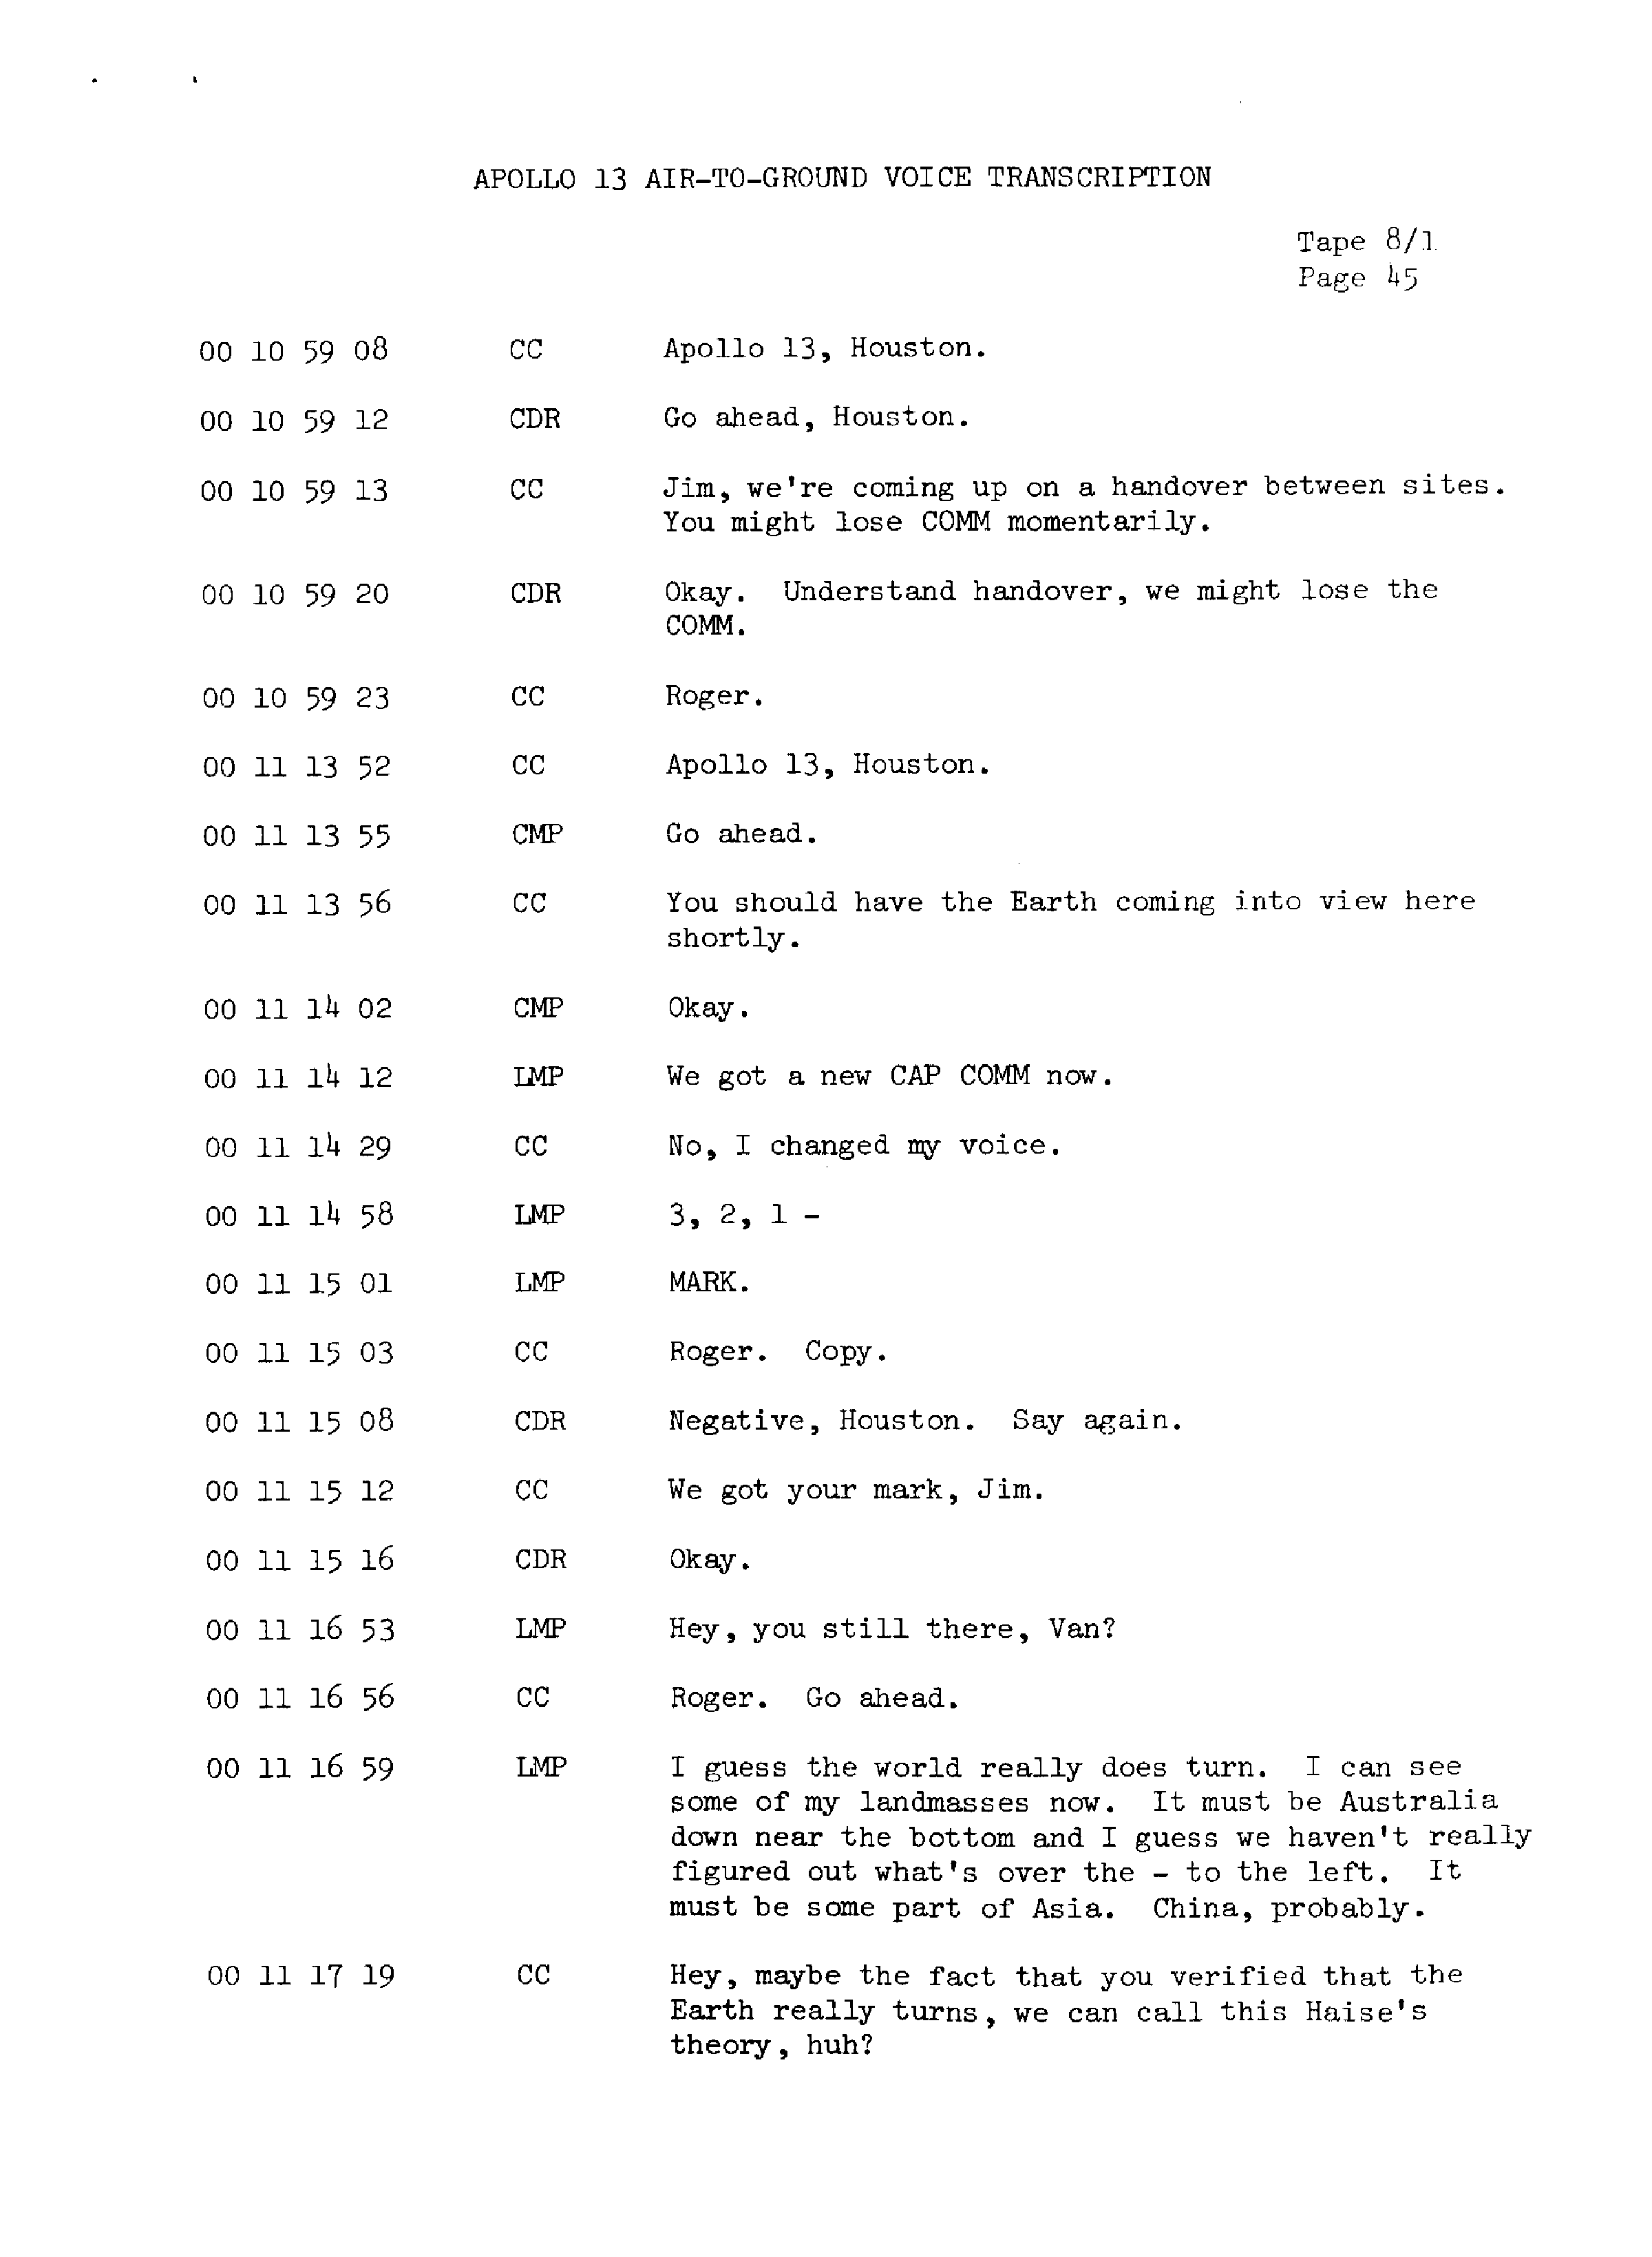 Page 52 of Apollo 13’s original transcript